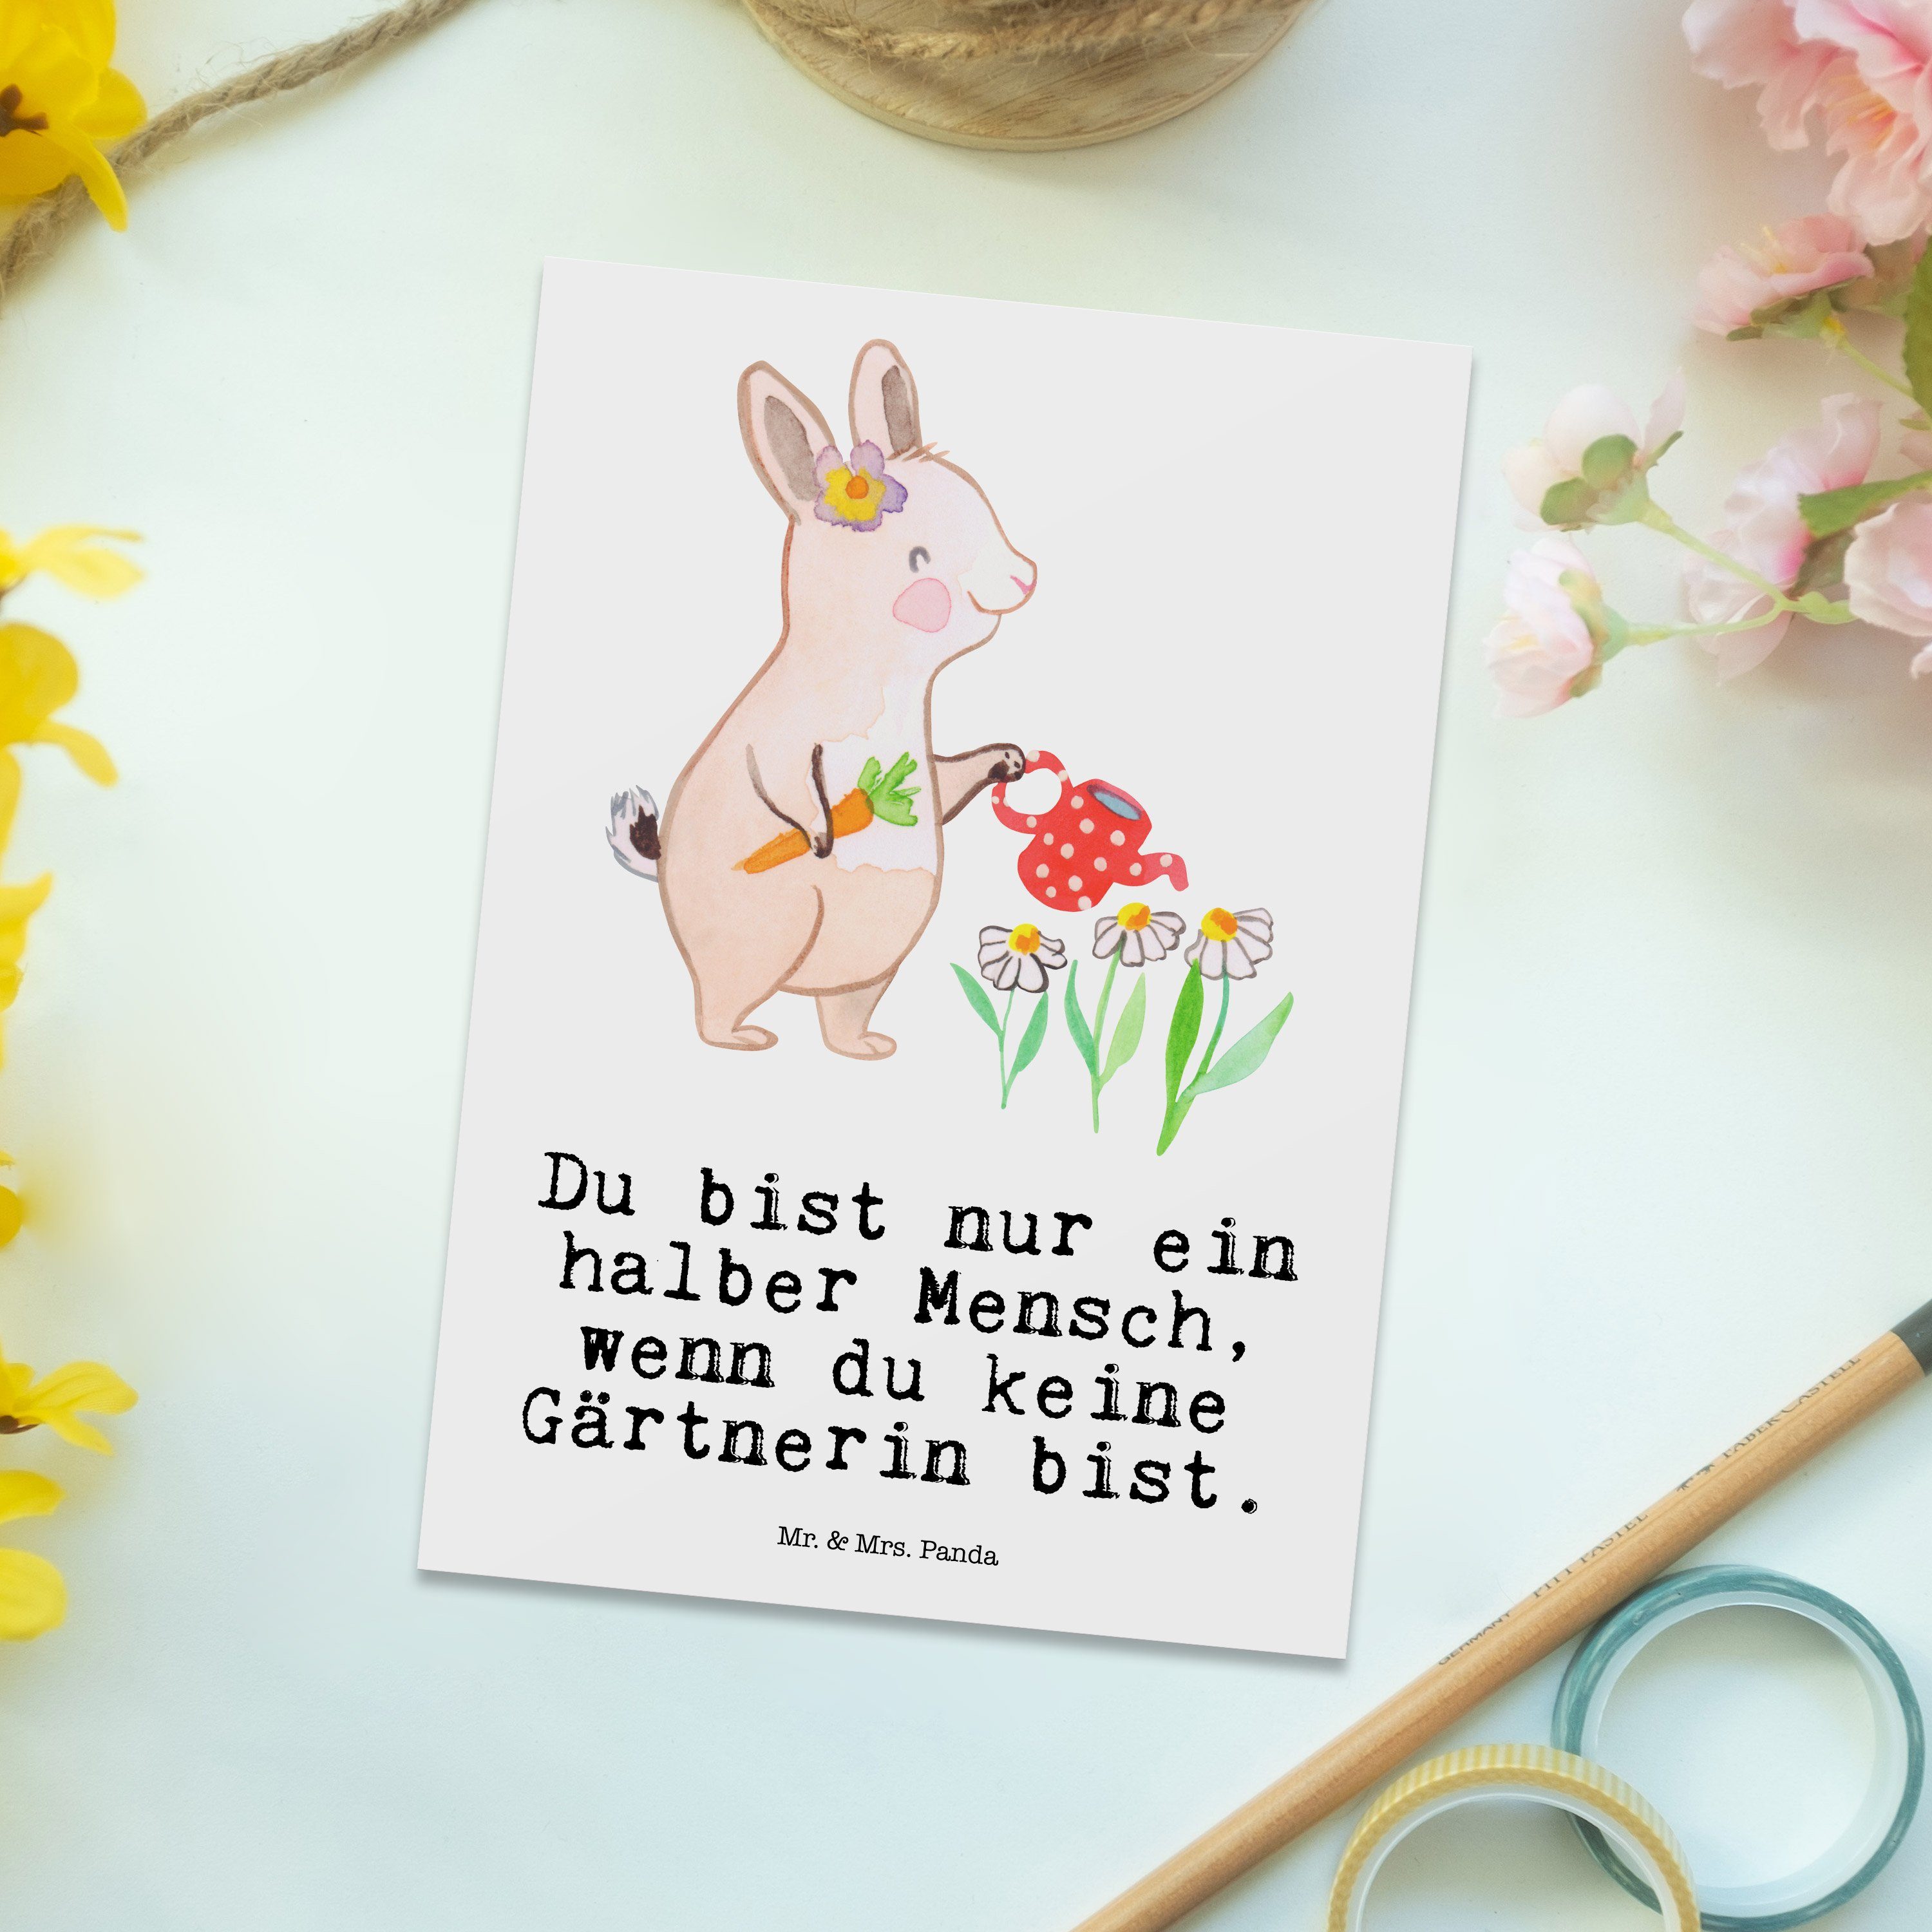 Mr. & Mrs. Panda Postkarte Gärtnerin mit Herz - Weiß - Geschenk, Gartenbau, Danke, Hobbygärtneri